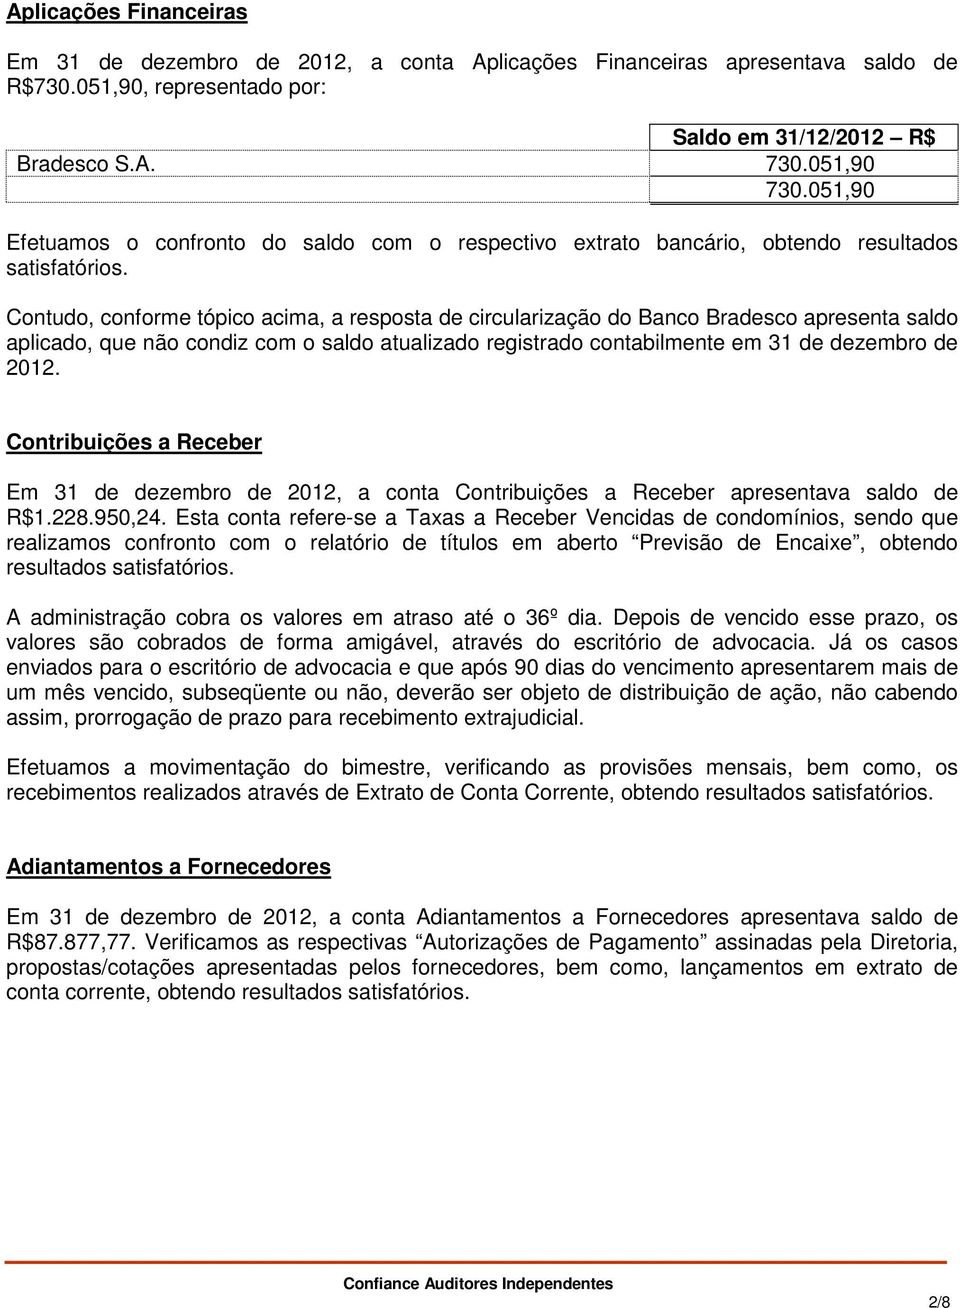 Contudo, conforme tópico acima, a resposta de circularização do Banco Bradesco apresenta saldo aplicado, que não condiz com o saldo atualizado registrado contabilmente em 31 de dezembro de 2012.